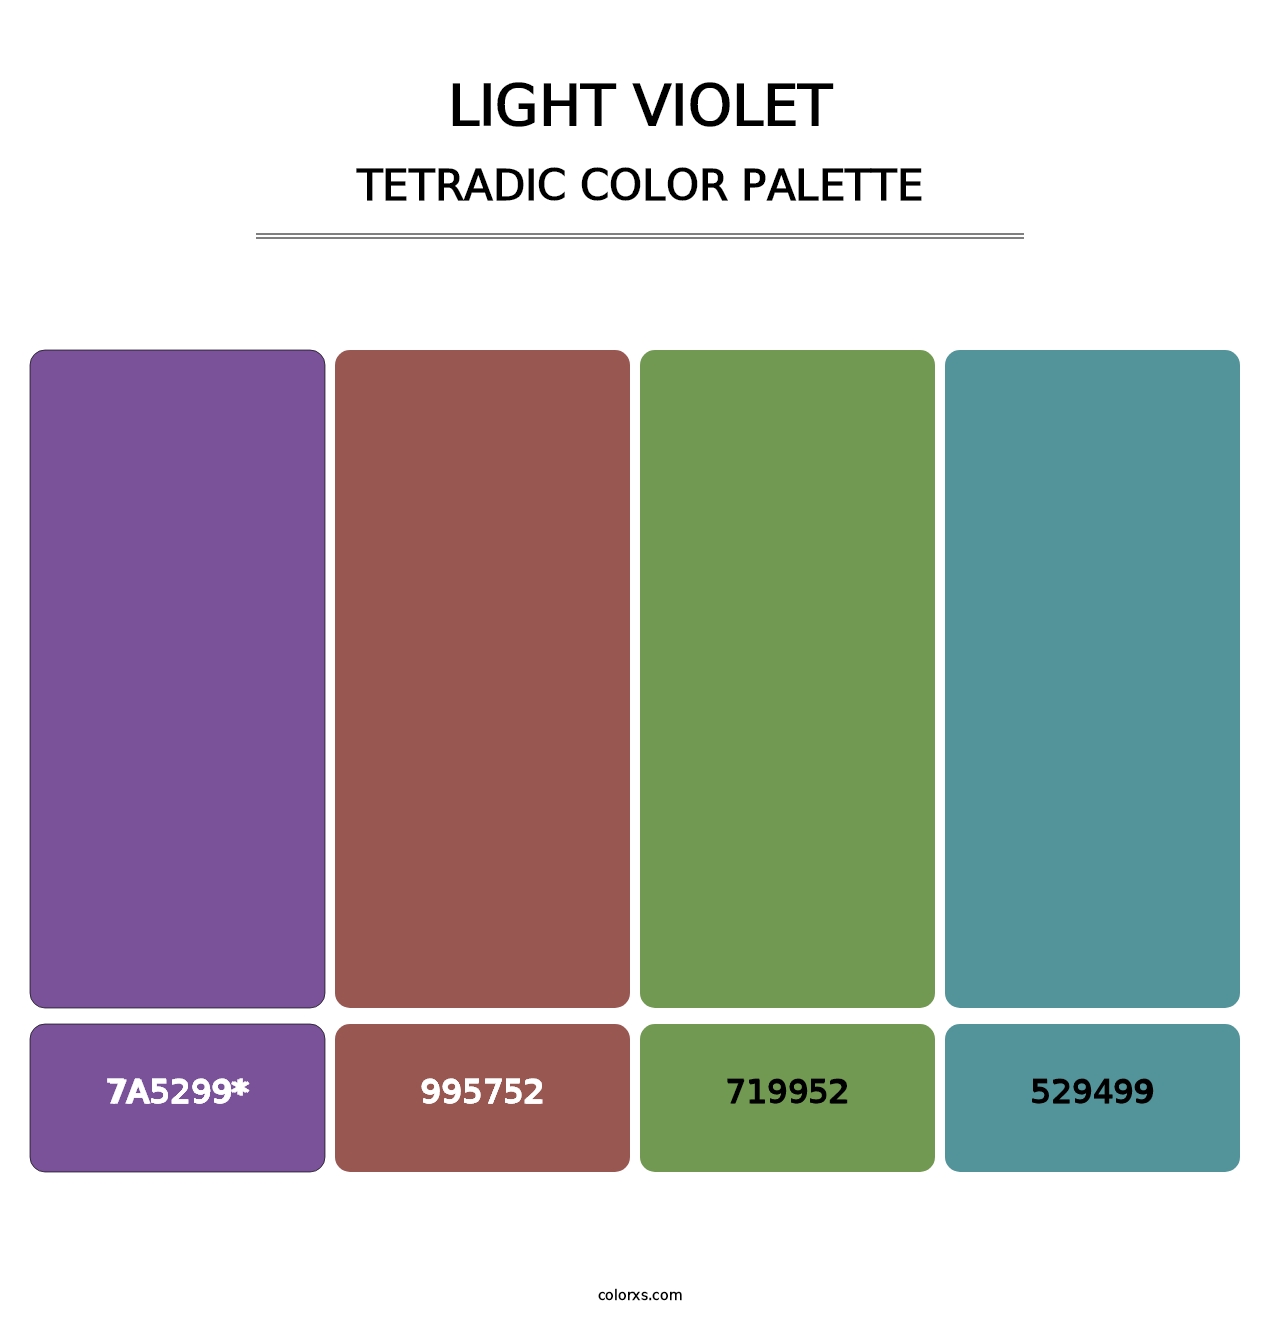 Light Violet - Tetradic Color Palette